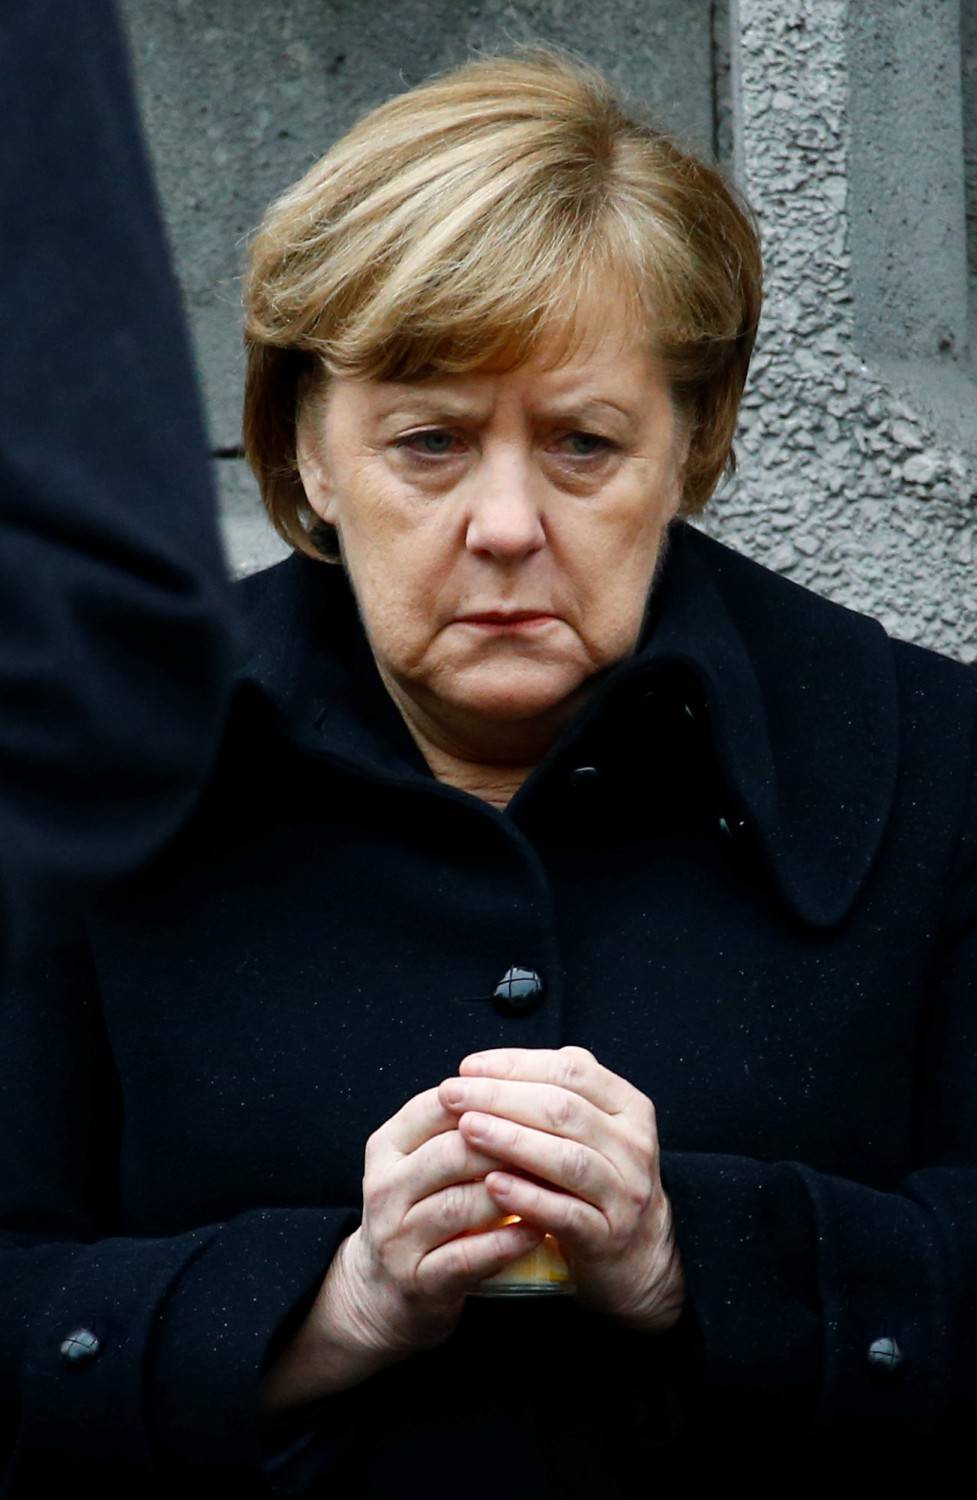 Il neo ministro imbarazza la Merkel: "L'islam non è parte del Paese"